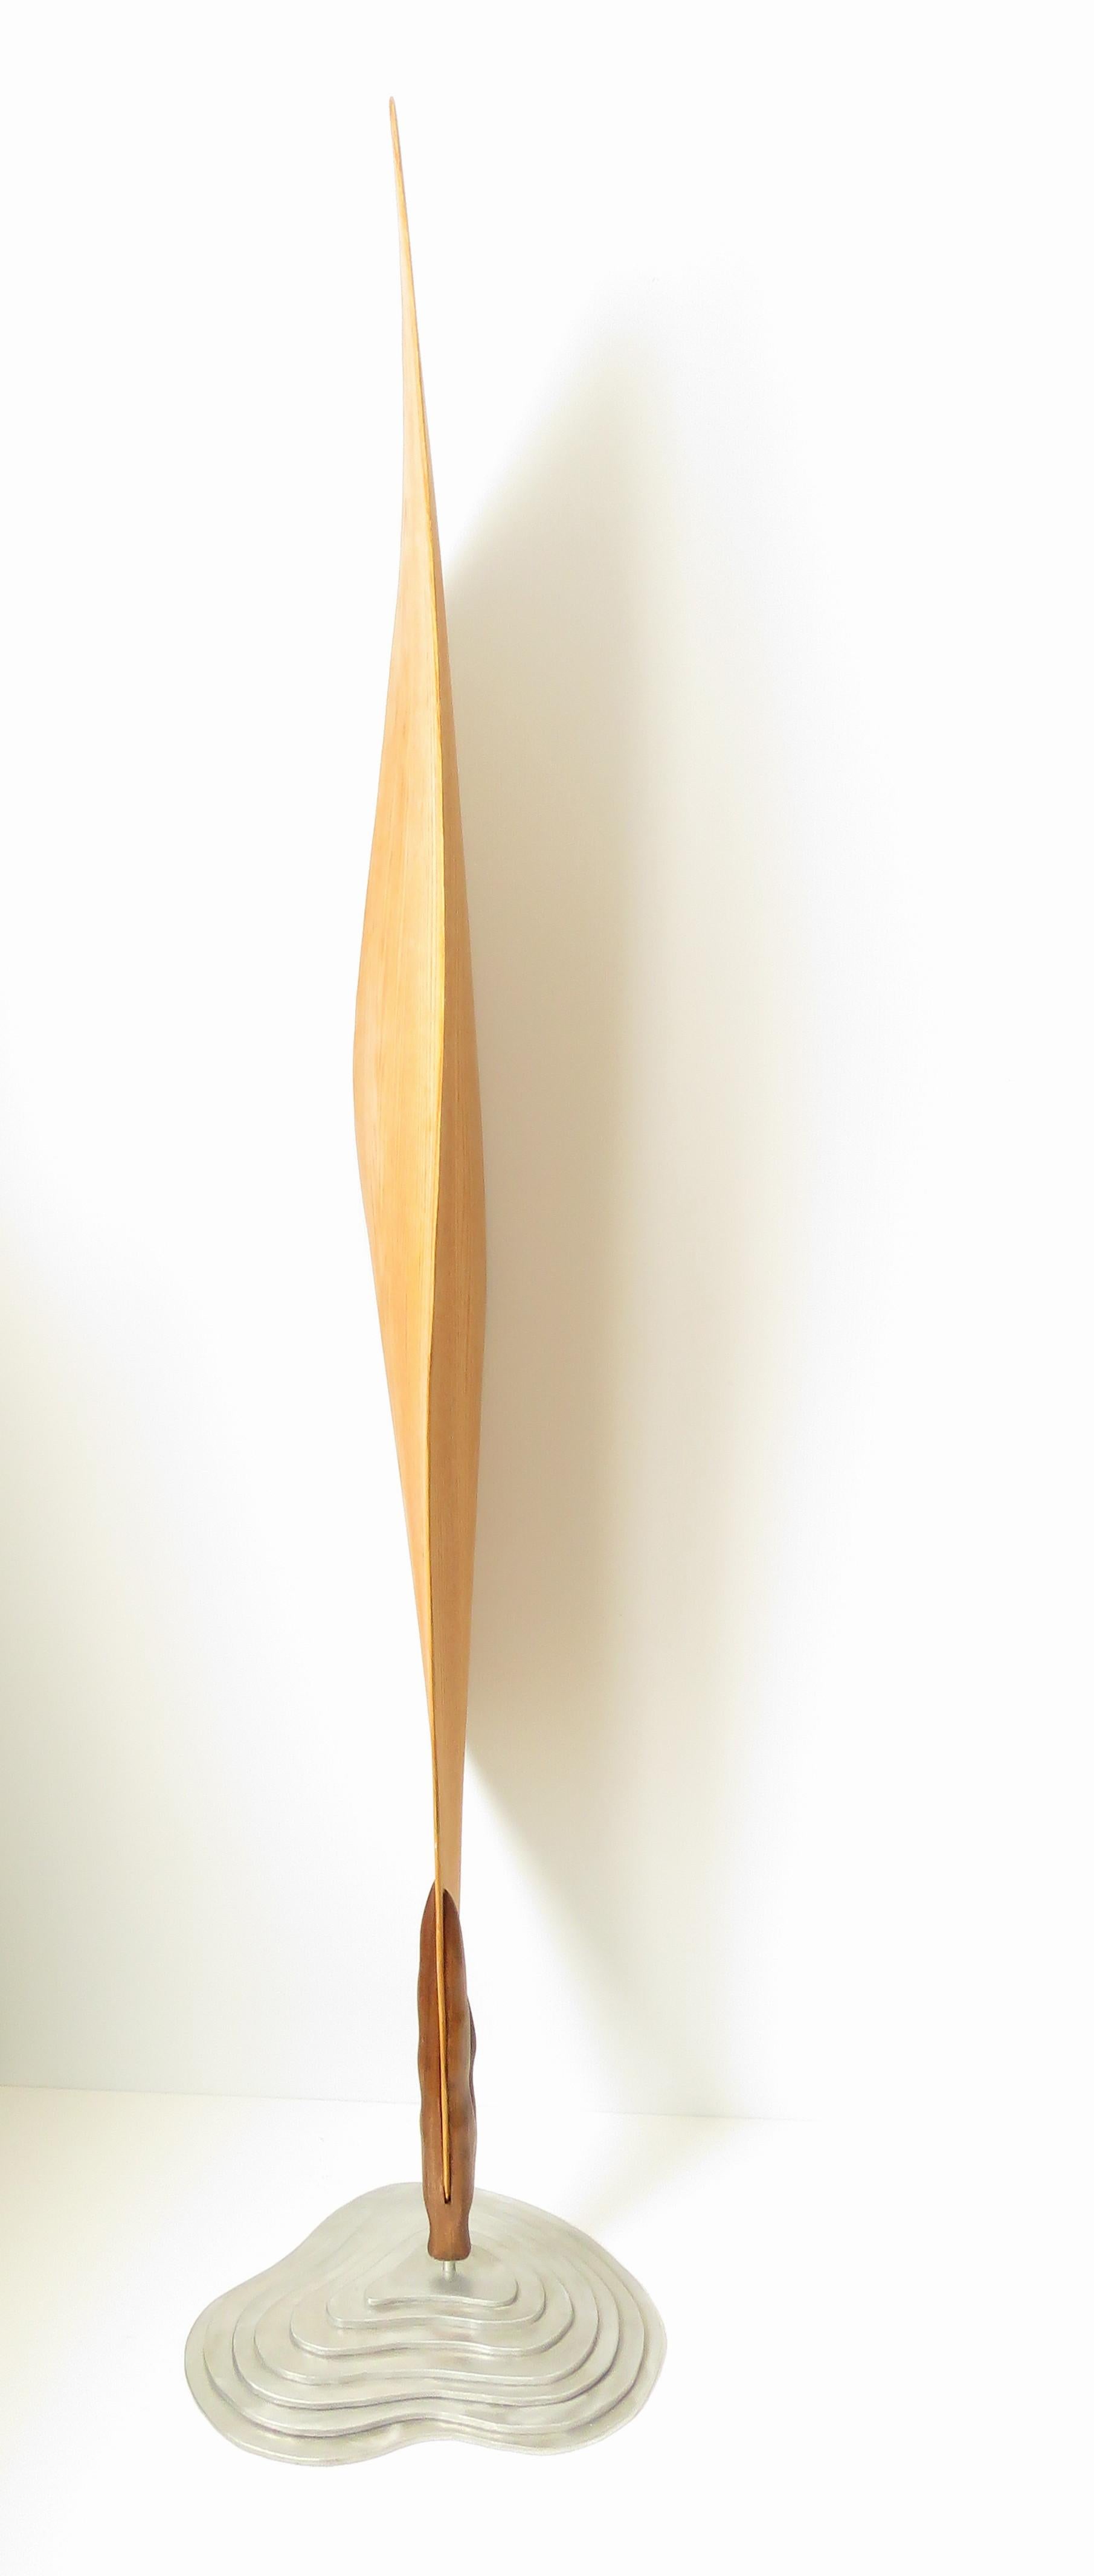 Cocon (bois chêne rouge oiseau art abstrait sculpture zen piédestal minimal pea pod) - Minimaliste Sculpture par Eric Tardif